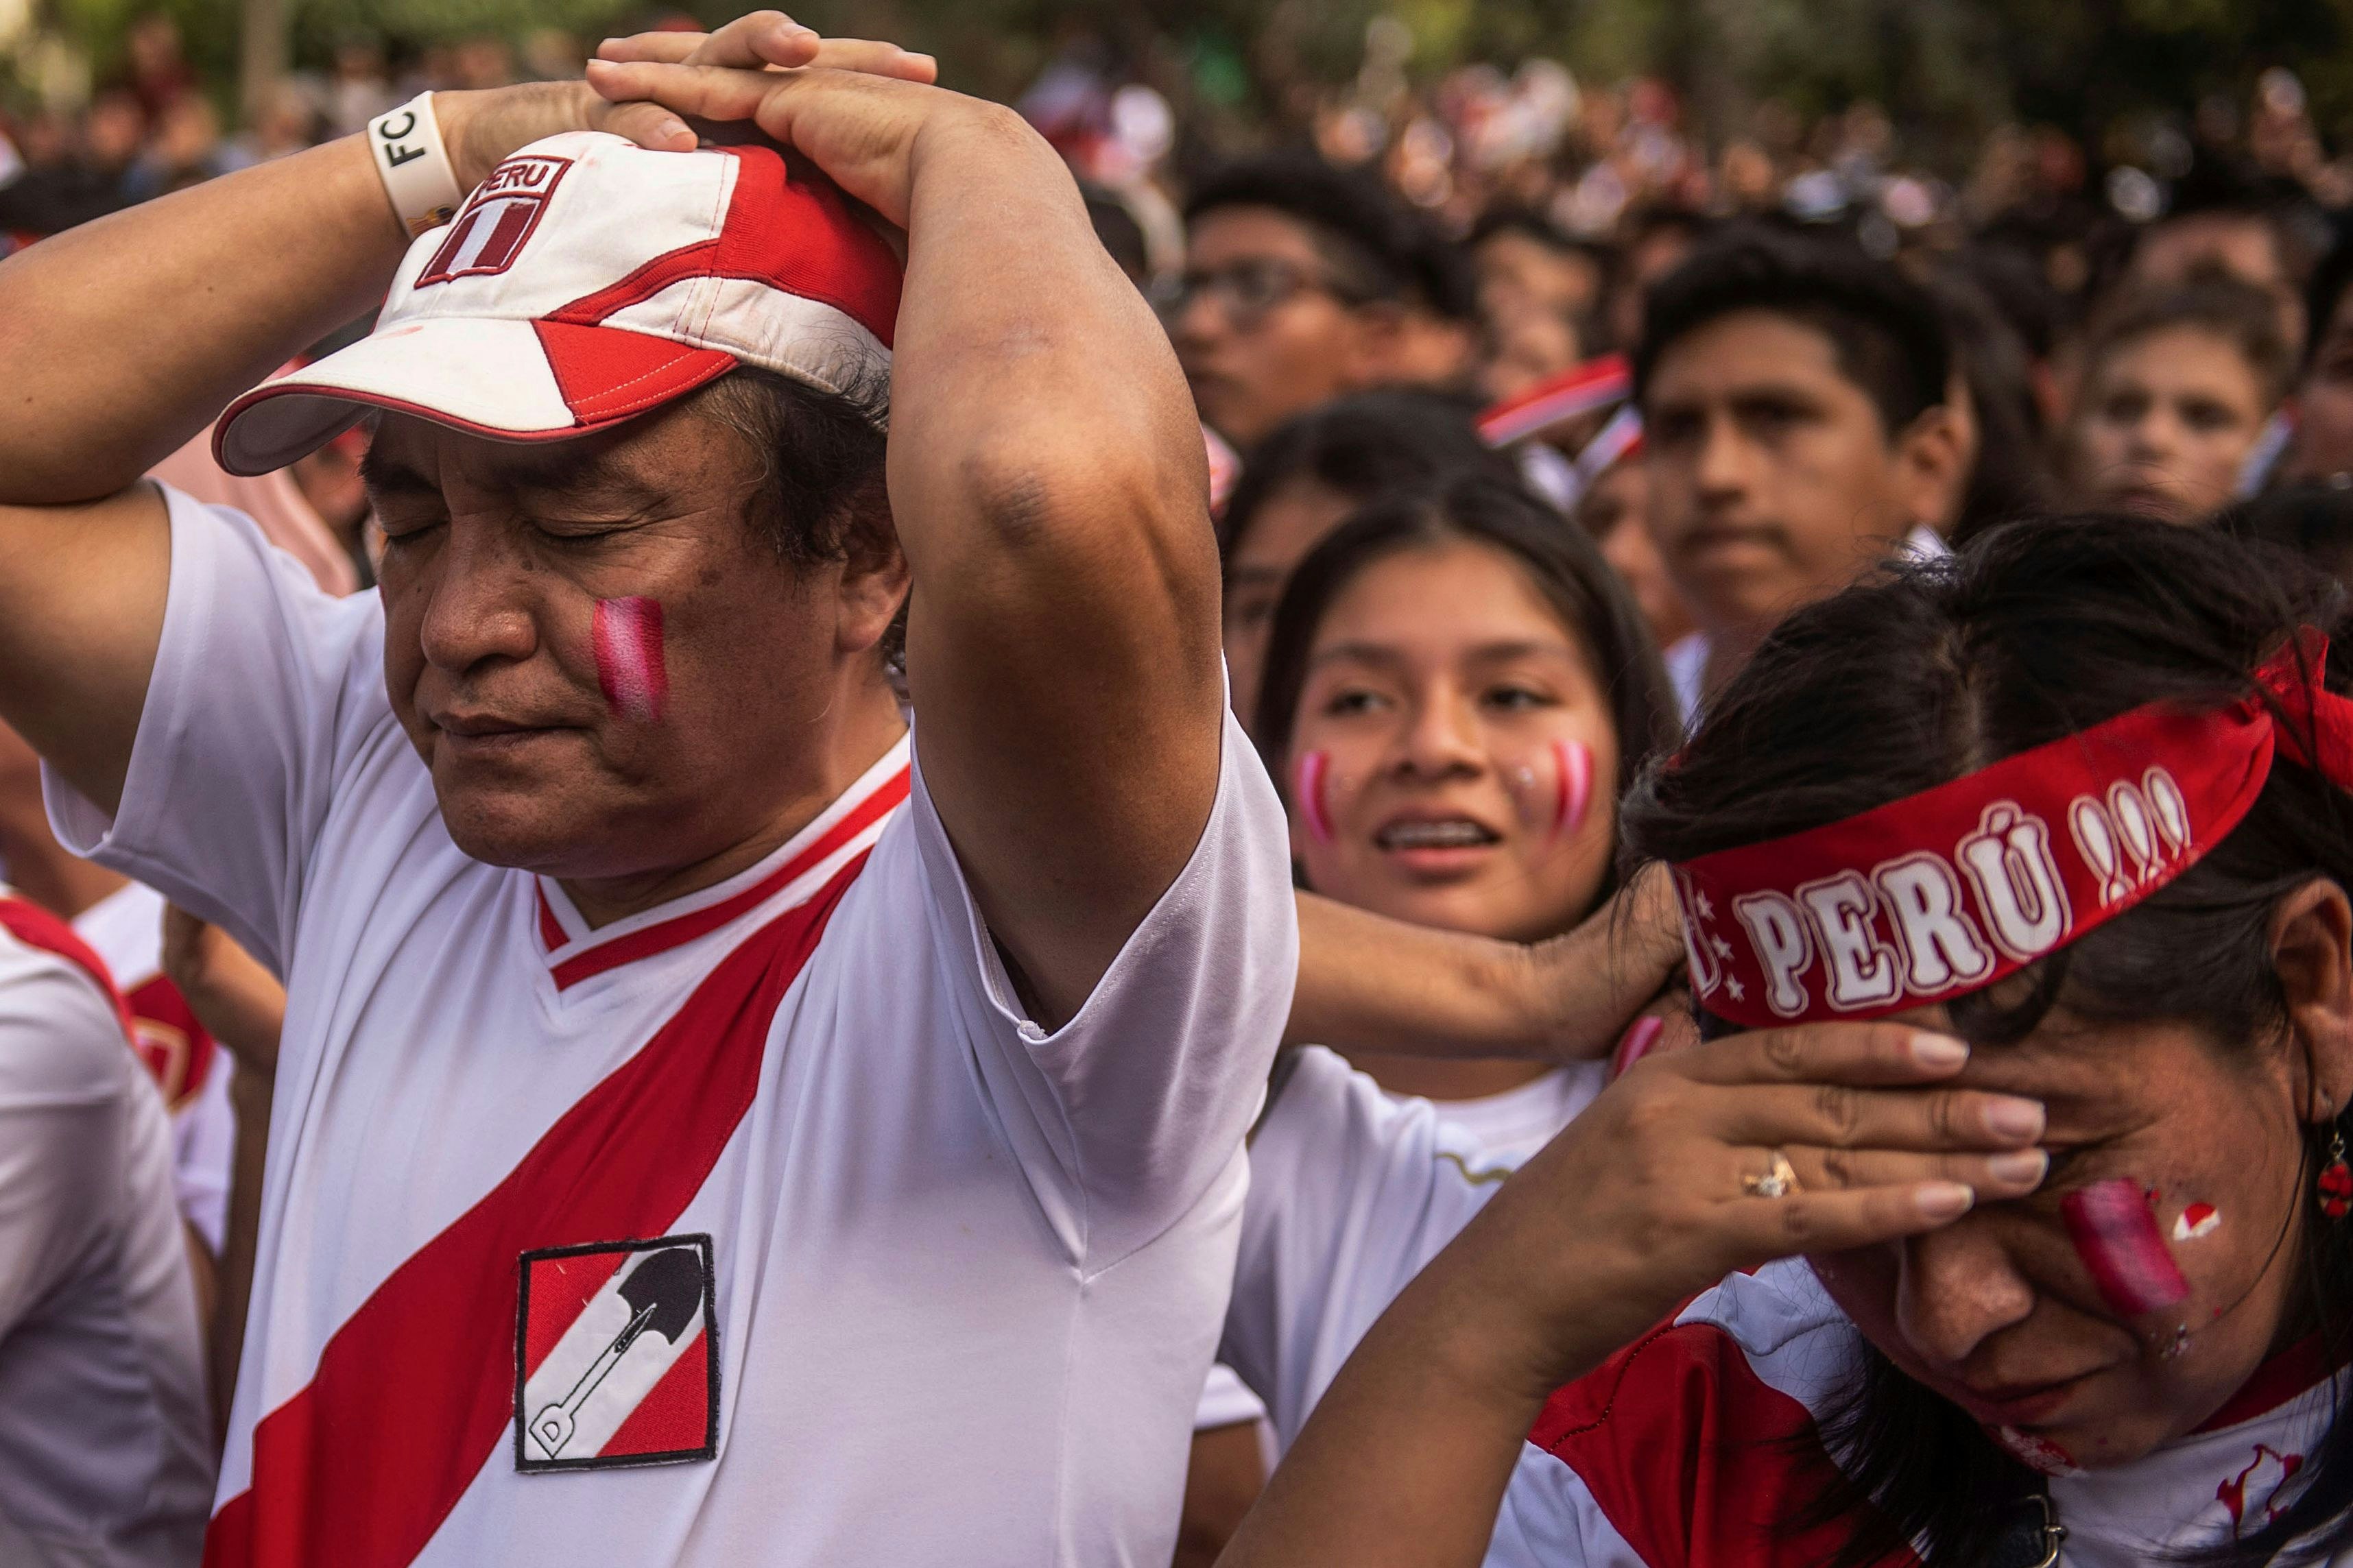 Un hombre, con las manos en la cabeza y los ojos cerrados, está de pie junto a una mujer que lleva un "Perú" Diadema que tiene la mano colocada sobre la frente.  Están rodeados por un gran grupo de hinchas peruanos tristes después de una derrota futbolística. 